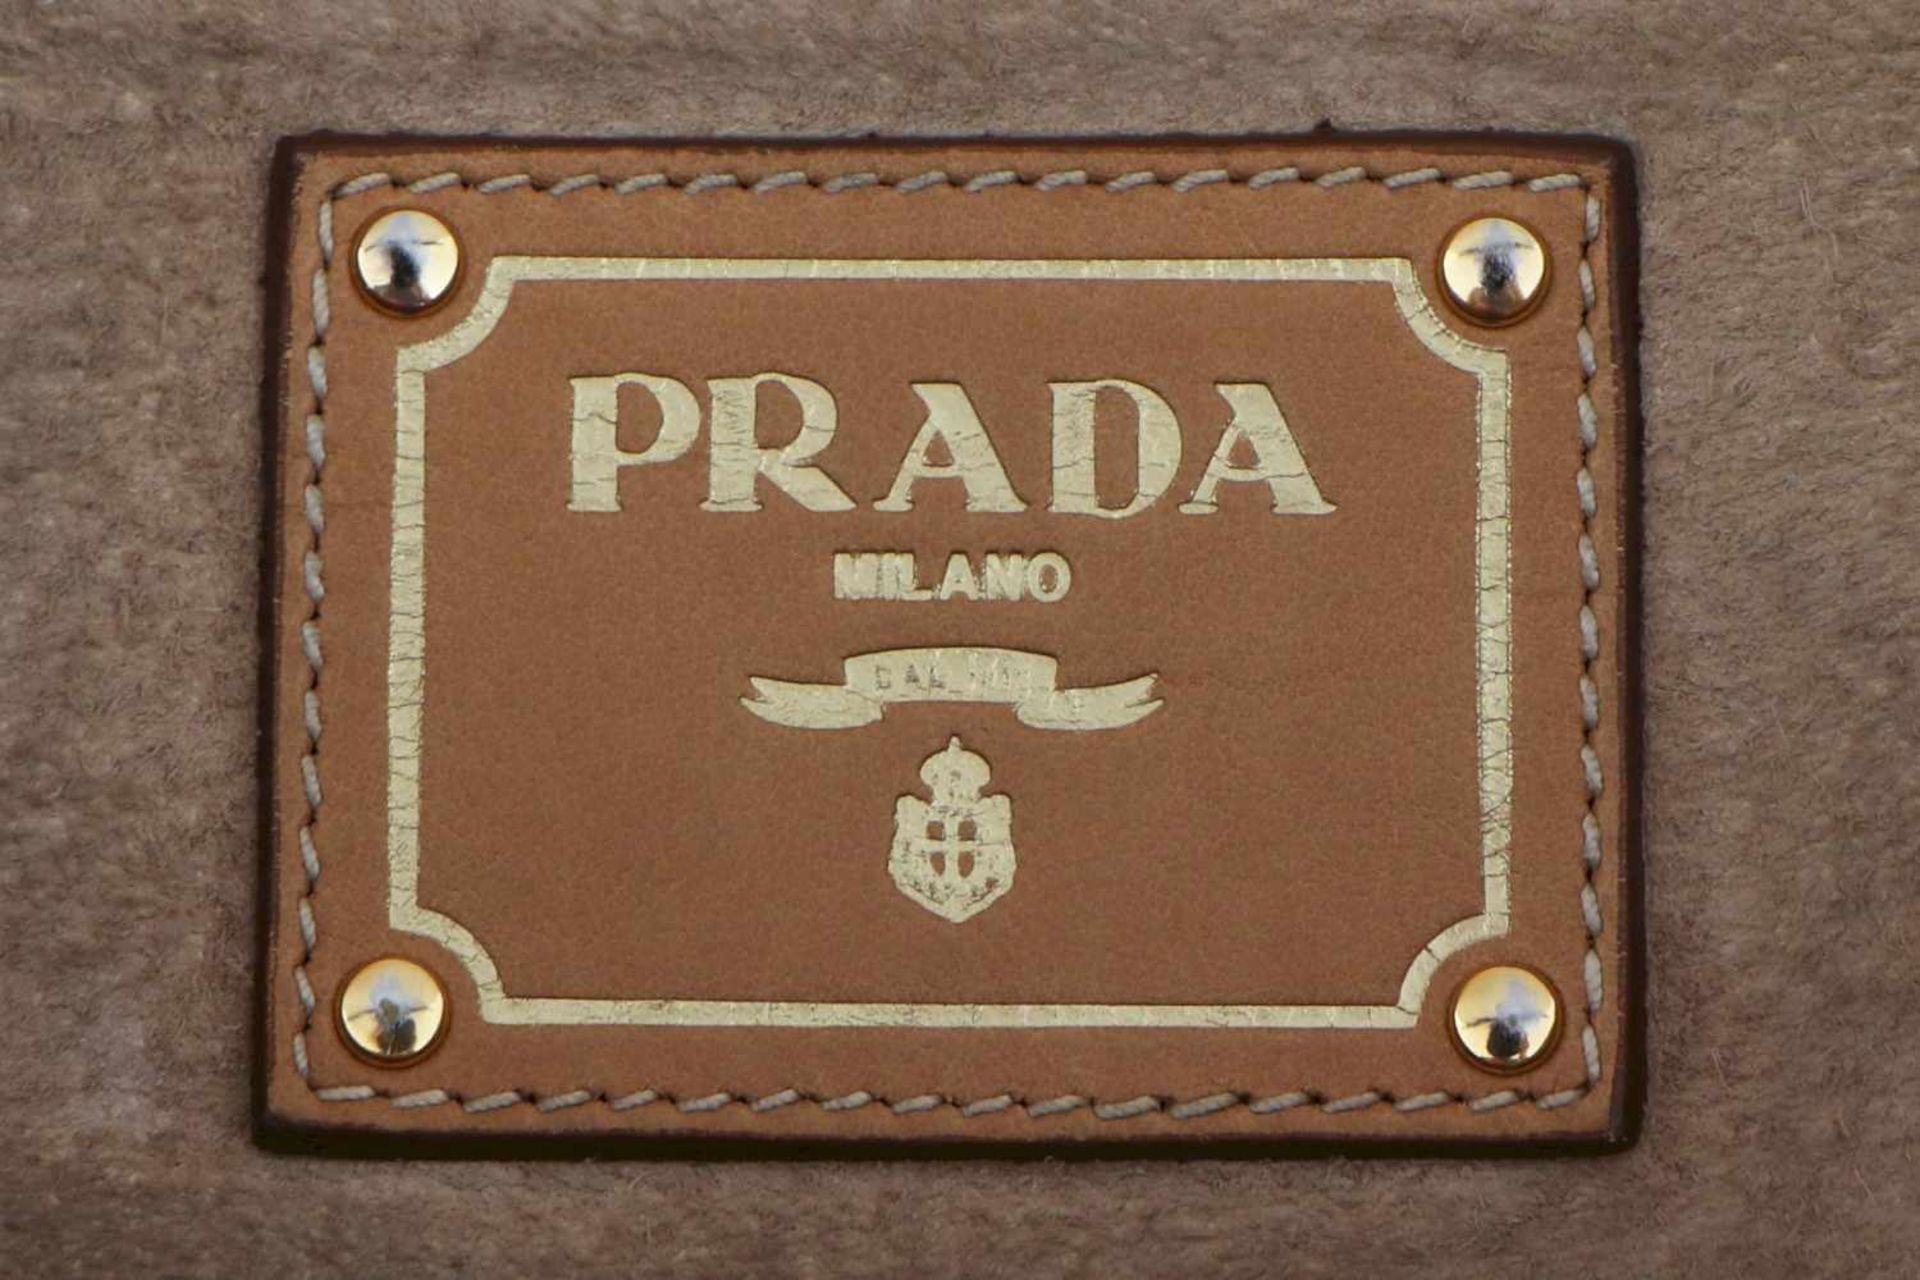 PRADA Handtasche hellbeiges Leder, Kuvertform, 2 Trageriemen, vergoldeter Prada-Schriftzug auf der - Bild 3 aus 4